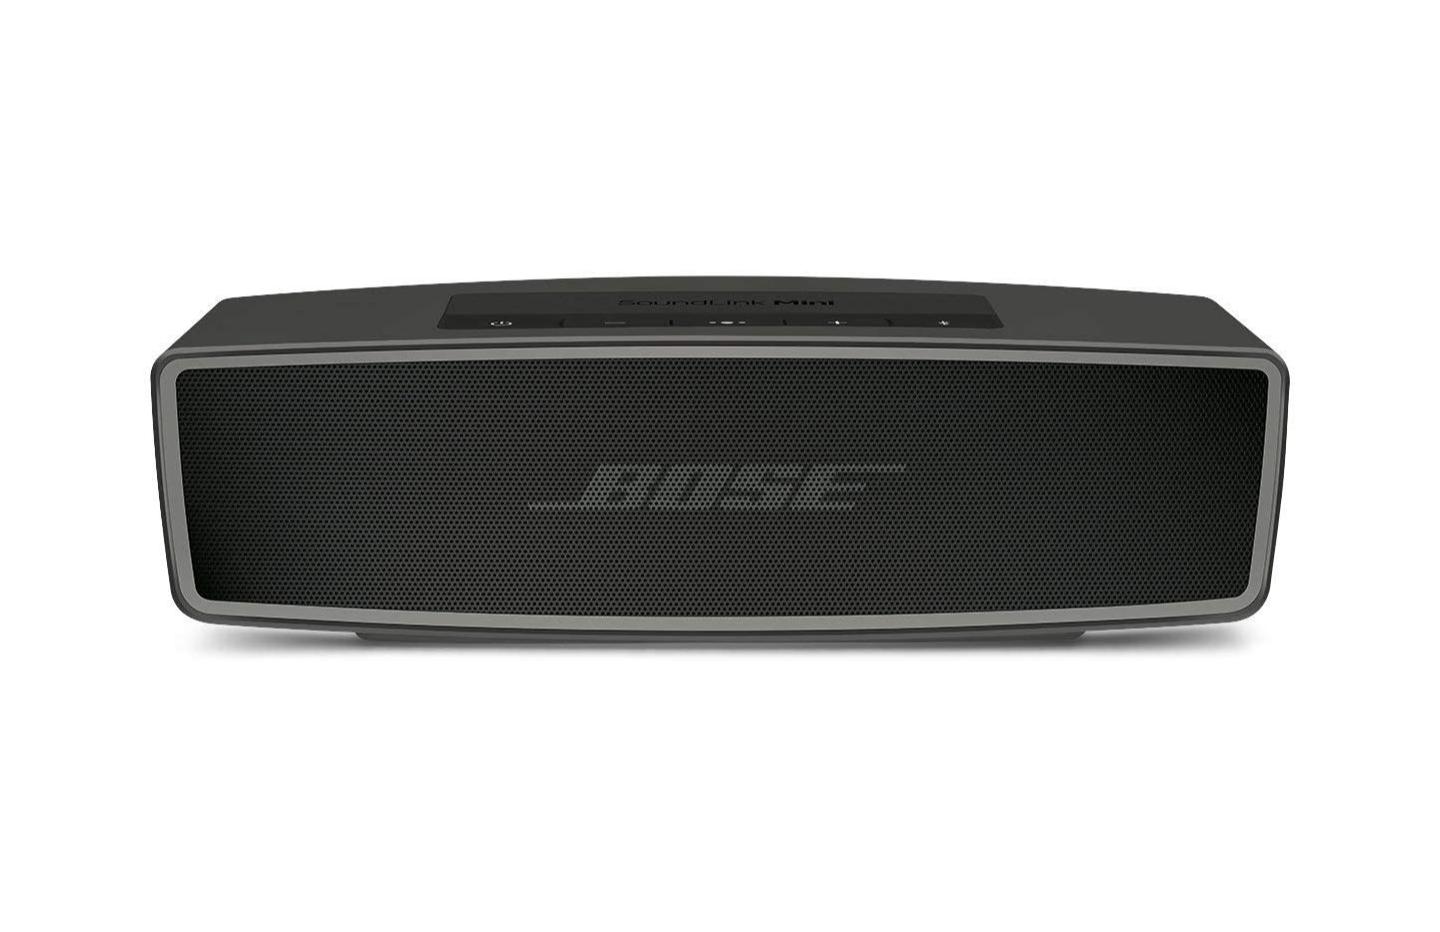 Bon plan : l'enceinte bluetooth, Bose SoundLink Mini 2 passe à 149